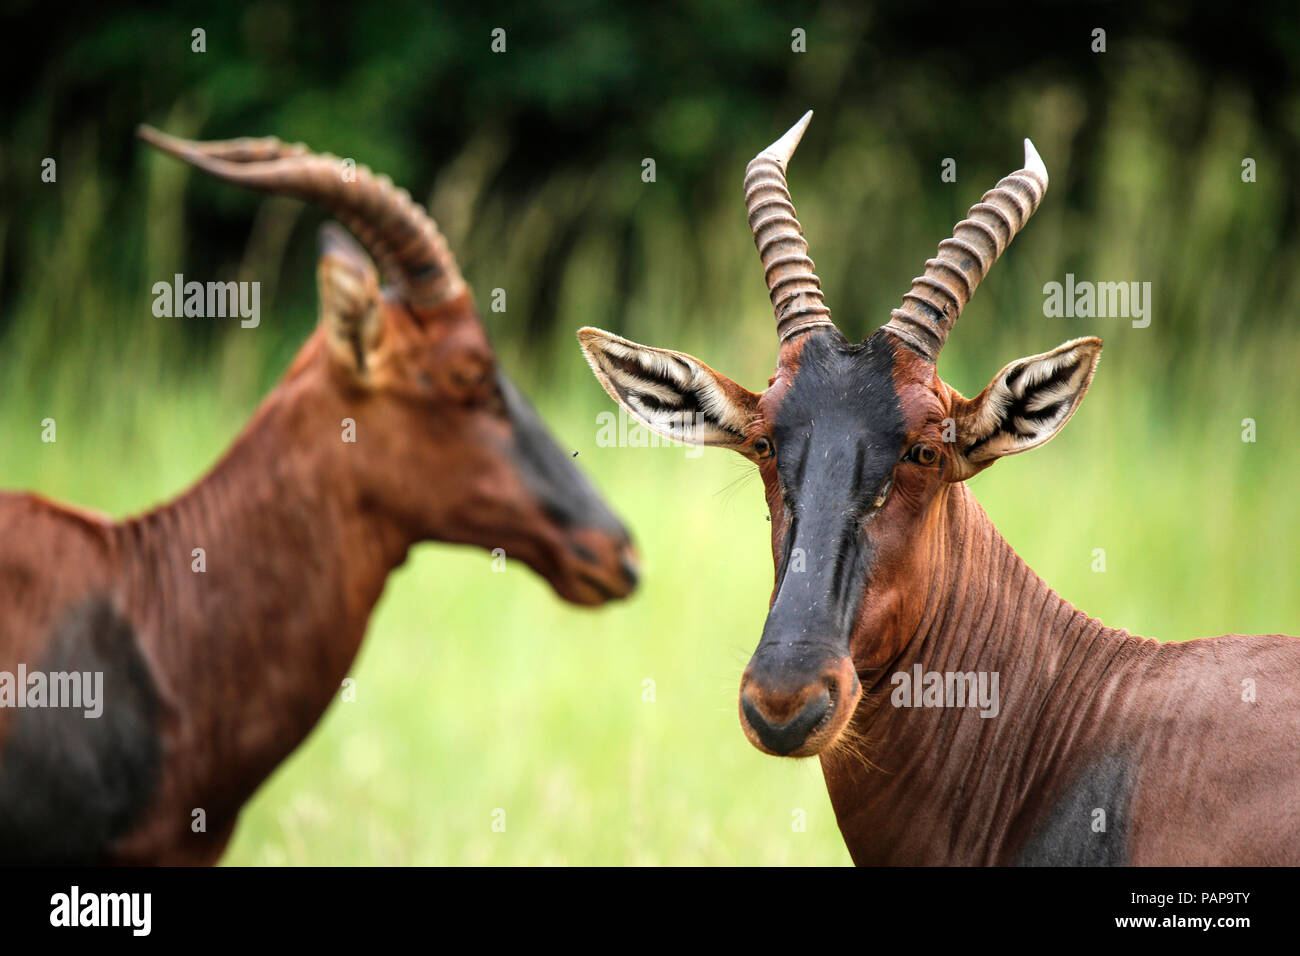 Uganda, Kigezi National Park, Kob antelopes Stock Photo